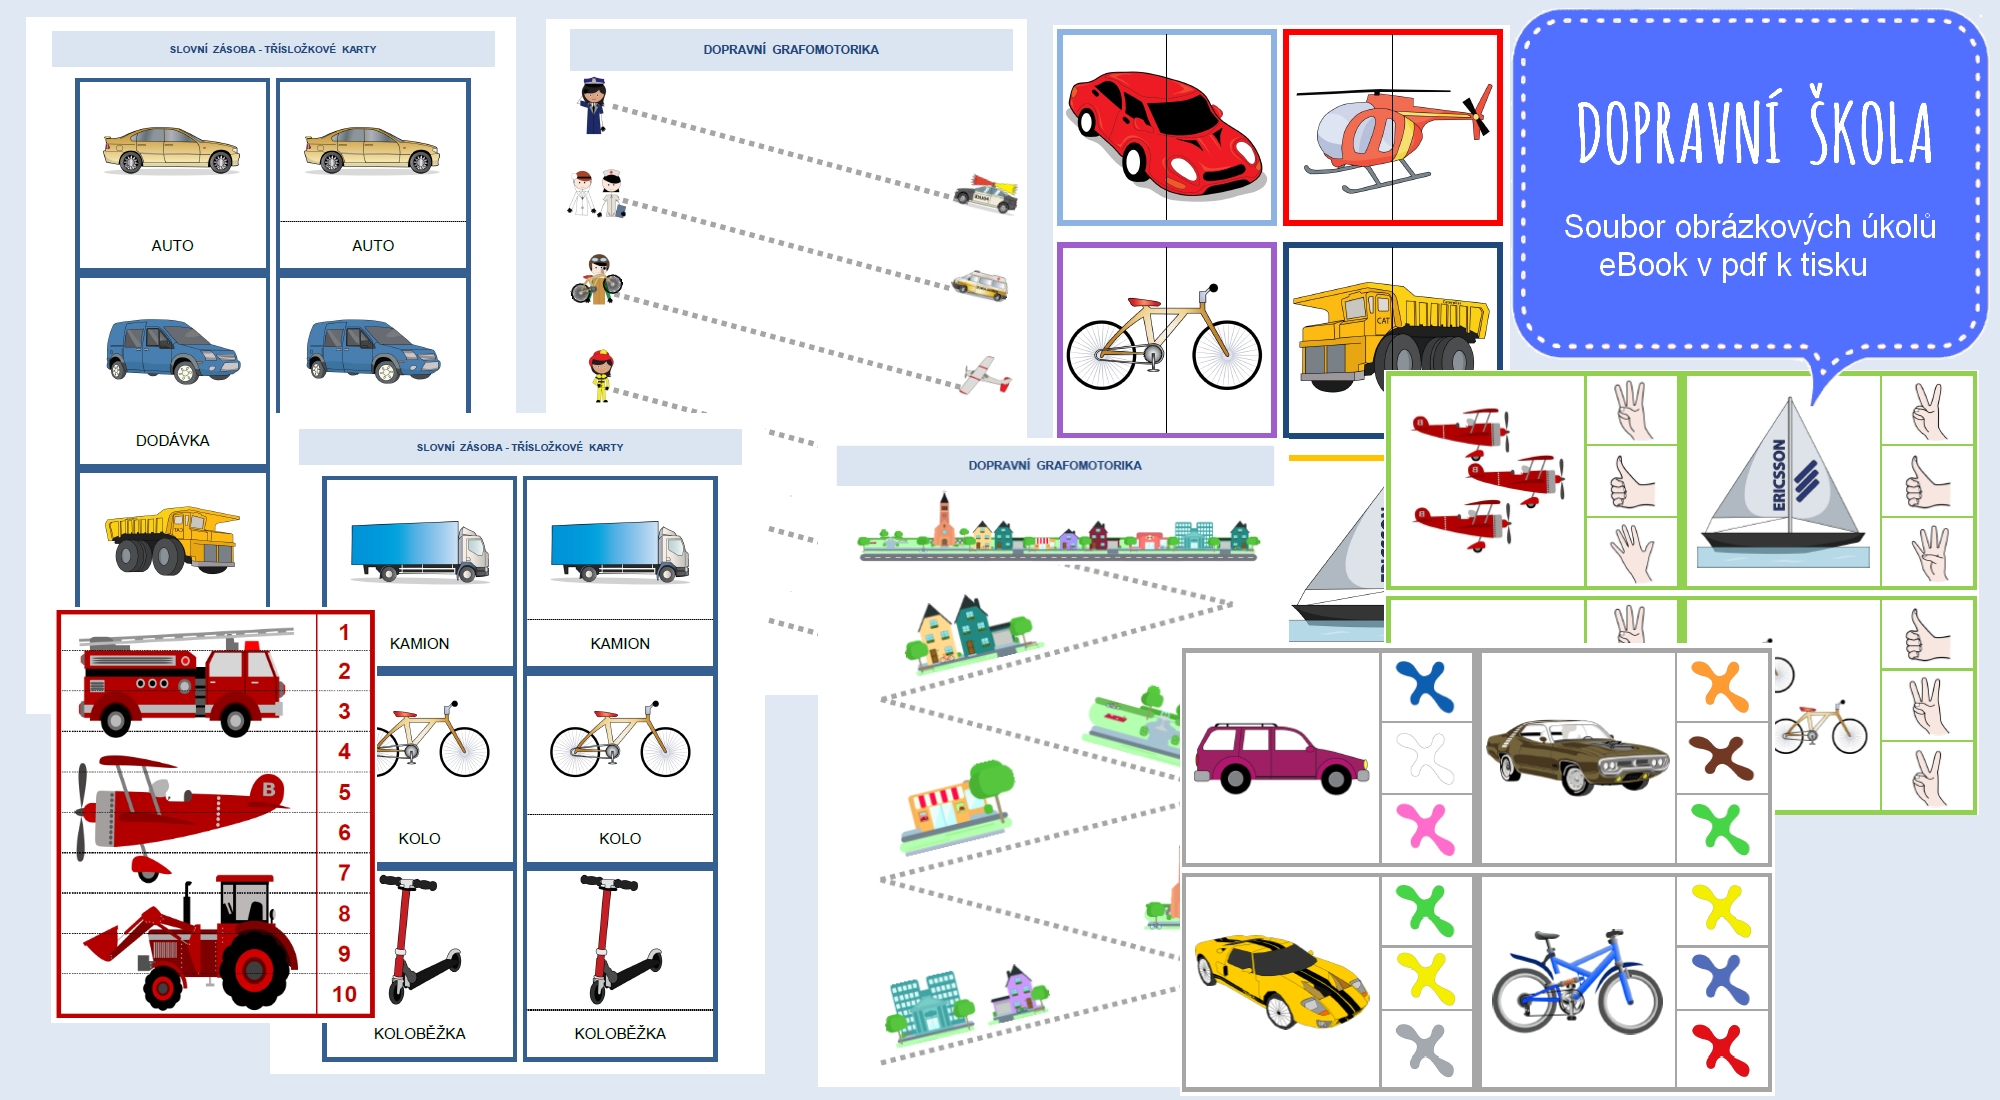 Dopravní škola, soubor úkolů pro malé děti v eBooku